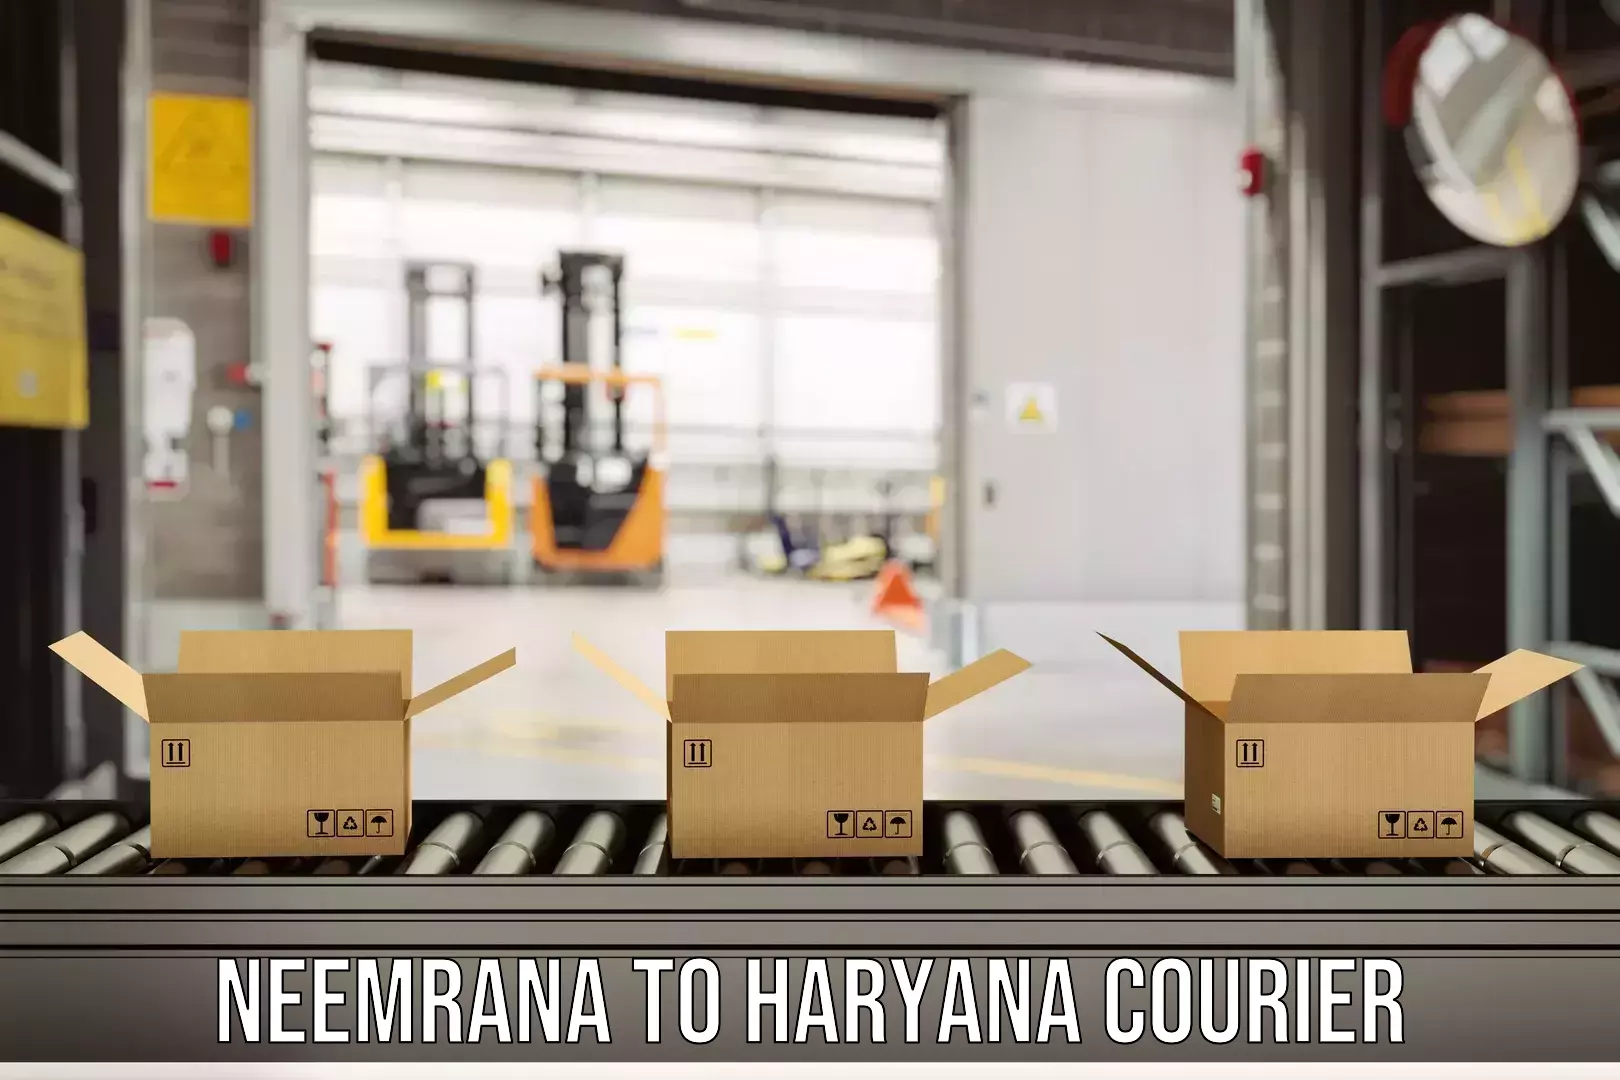 Express package handling Neemrana to Haryana